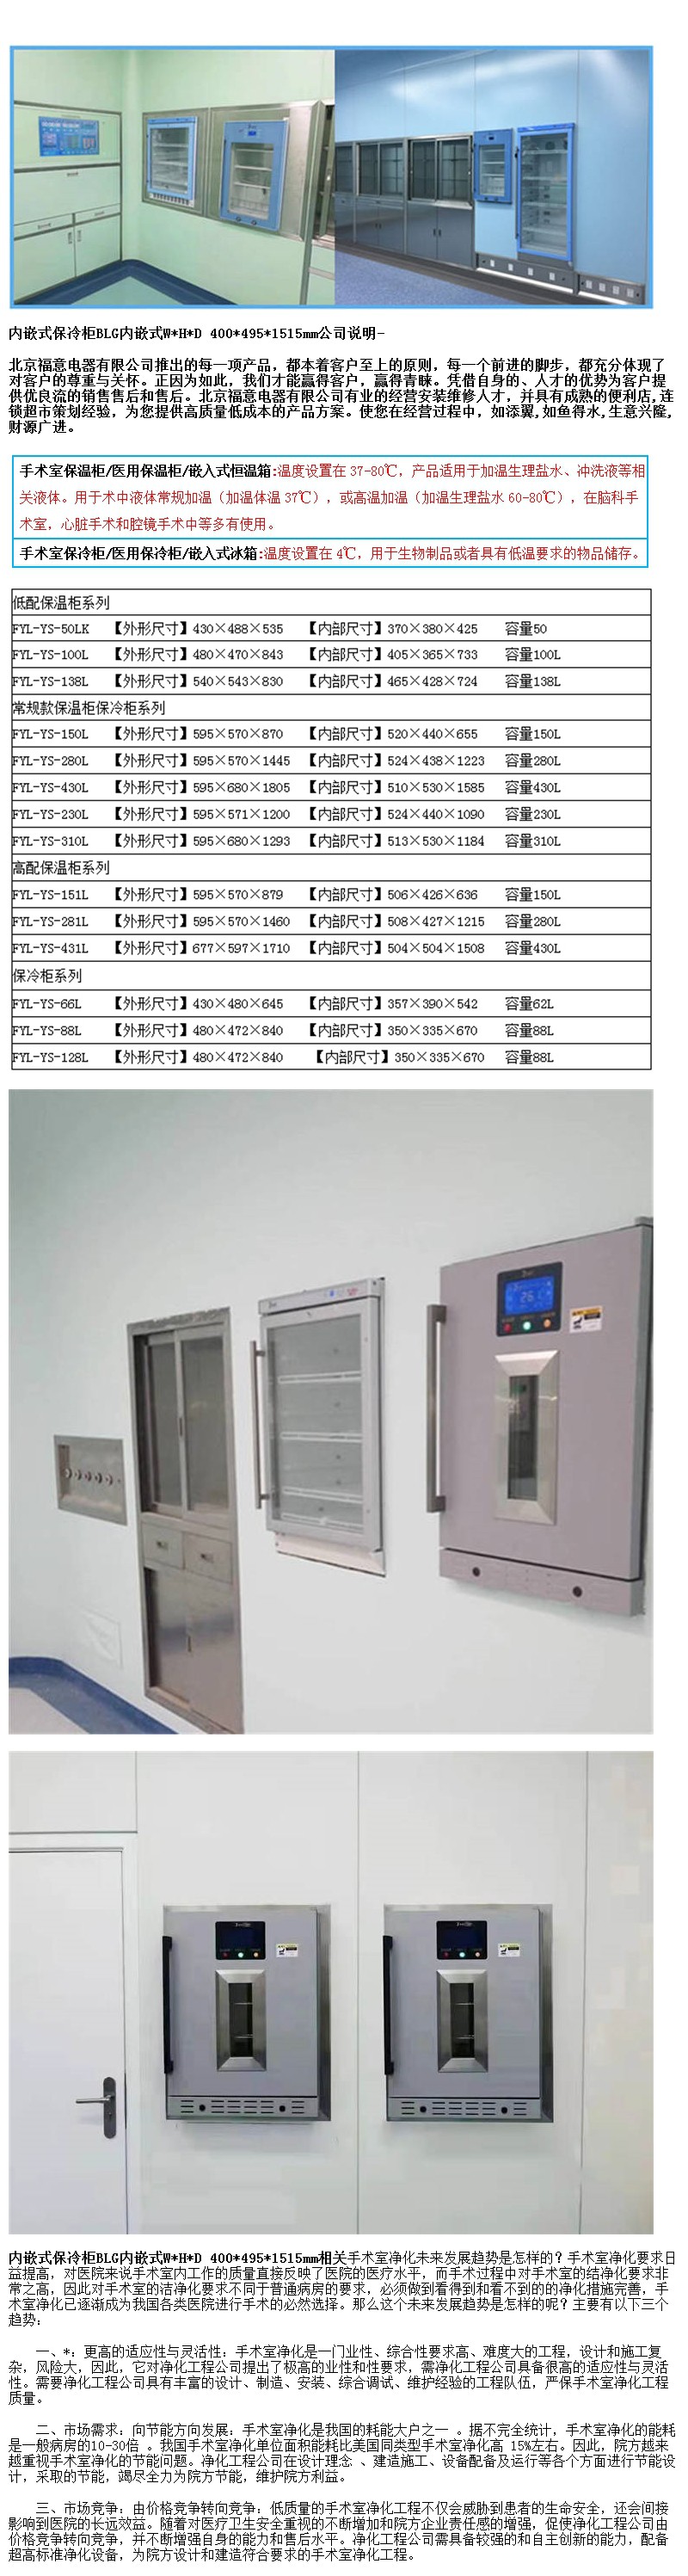 净化工程设备嵌入式保冷柜